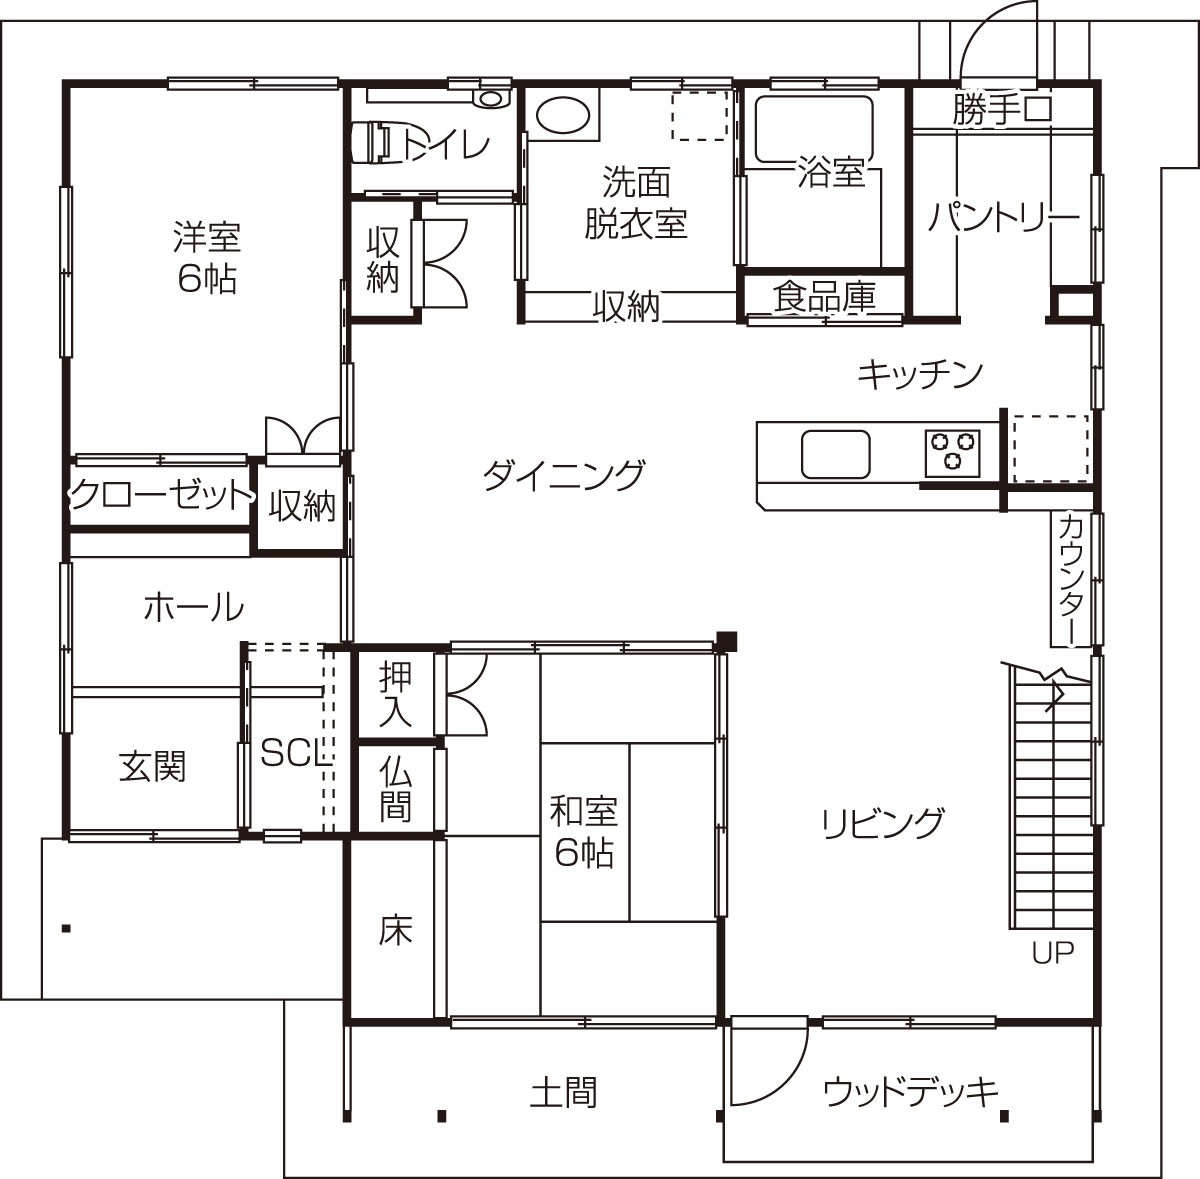 鳥取県西伯郡のおすすめ工務店「藤原建築工務店」による新築事例の1階間取り図